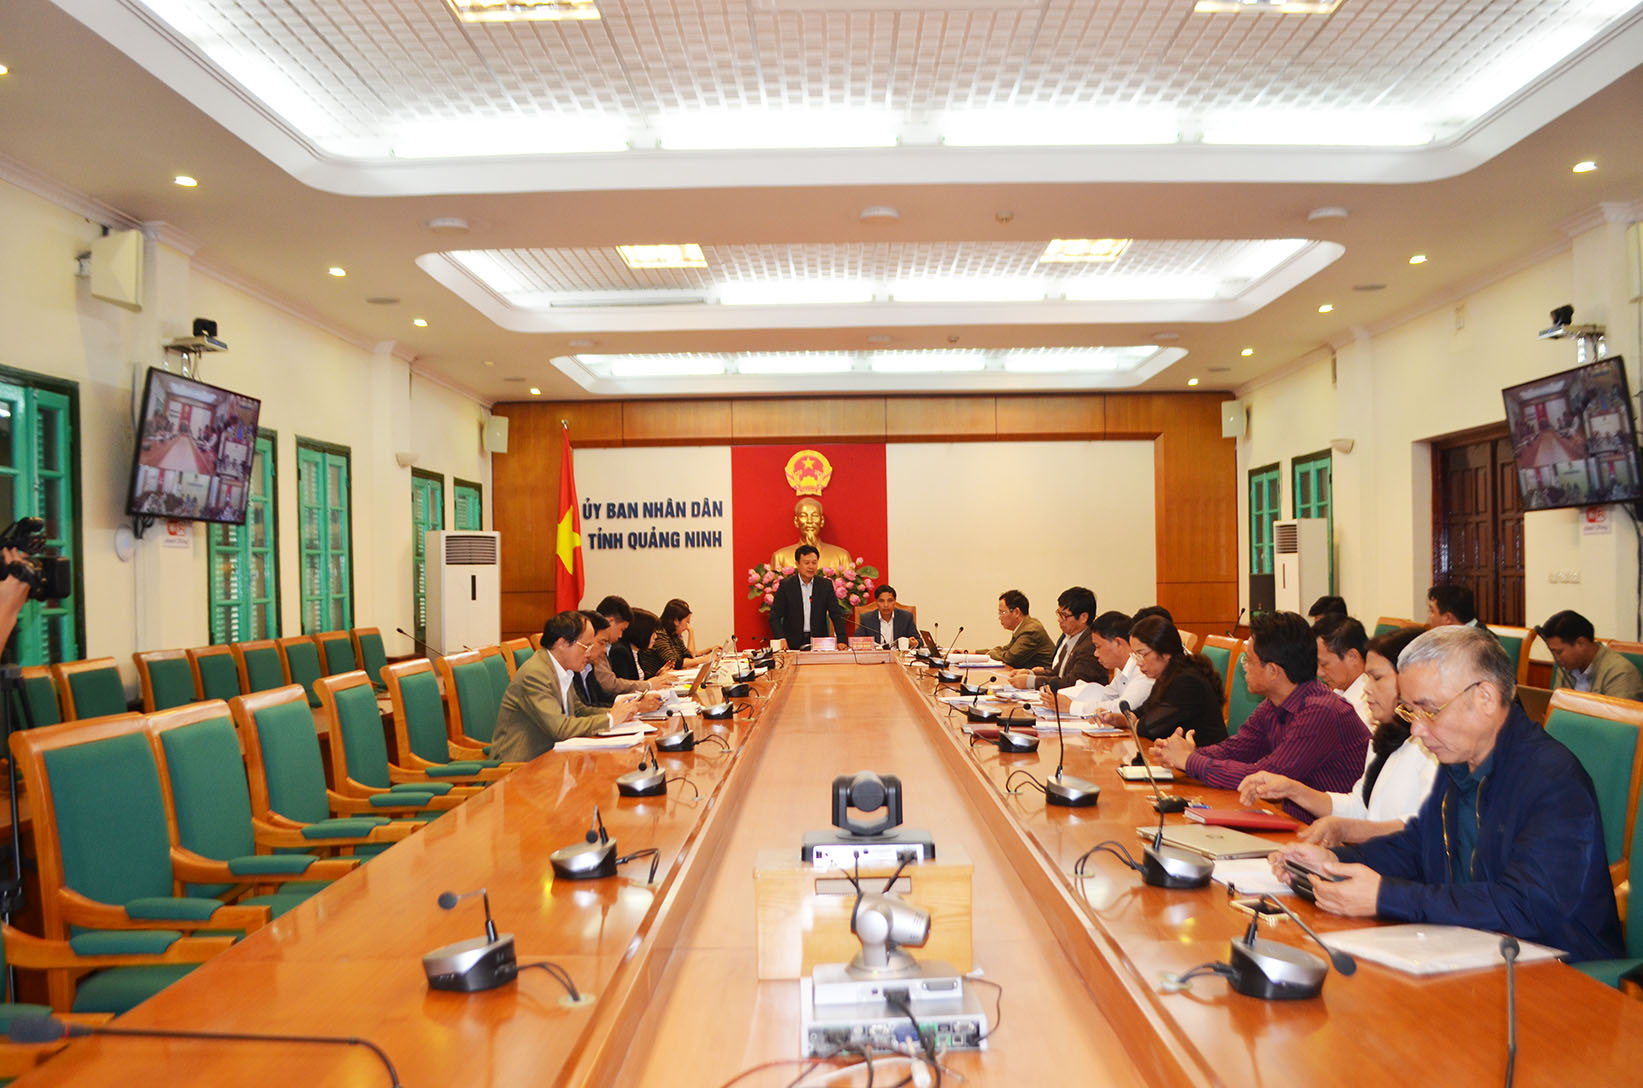 Đồng chí Nguyễn Đức Thành, Phó Chủ tịch HĐND tỉnh, chủ trì cuộc họp.